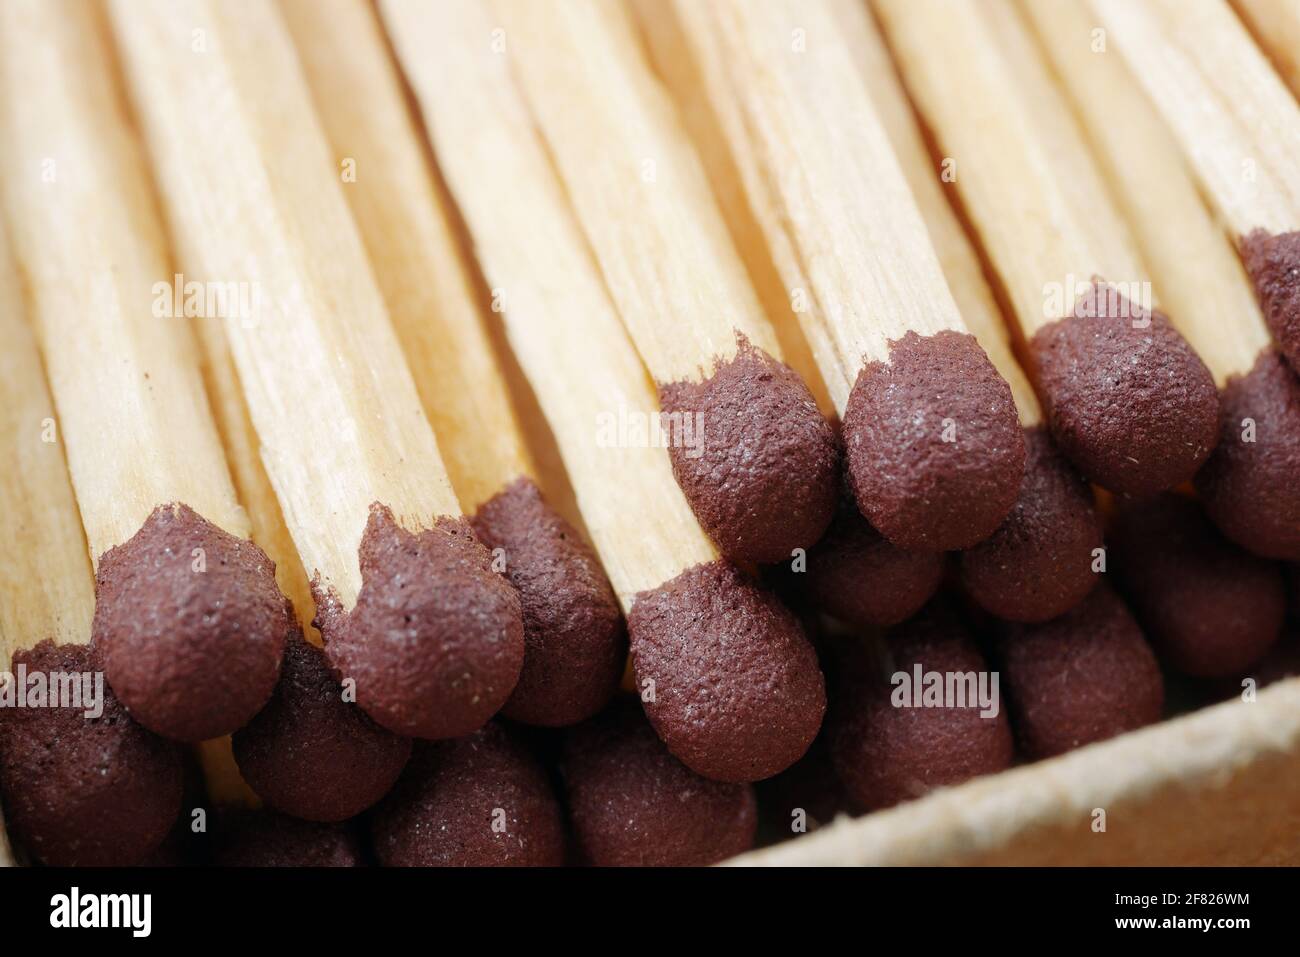 macro of wooden matchsticks in open matchbox, closeup of brown match heads Stock Photo